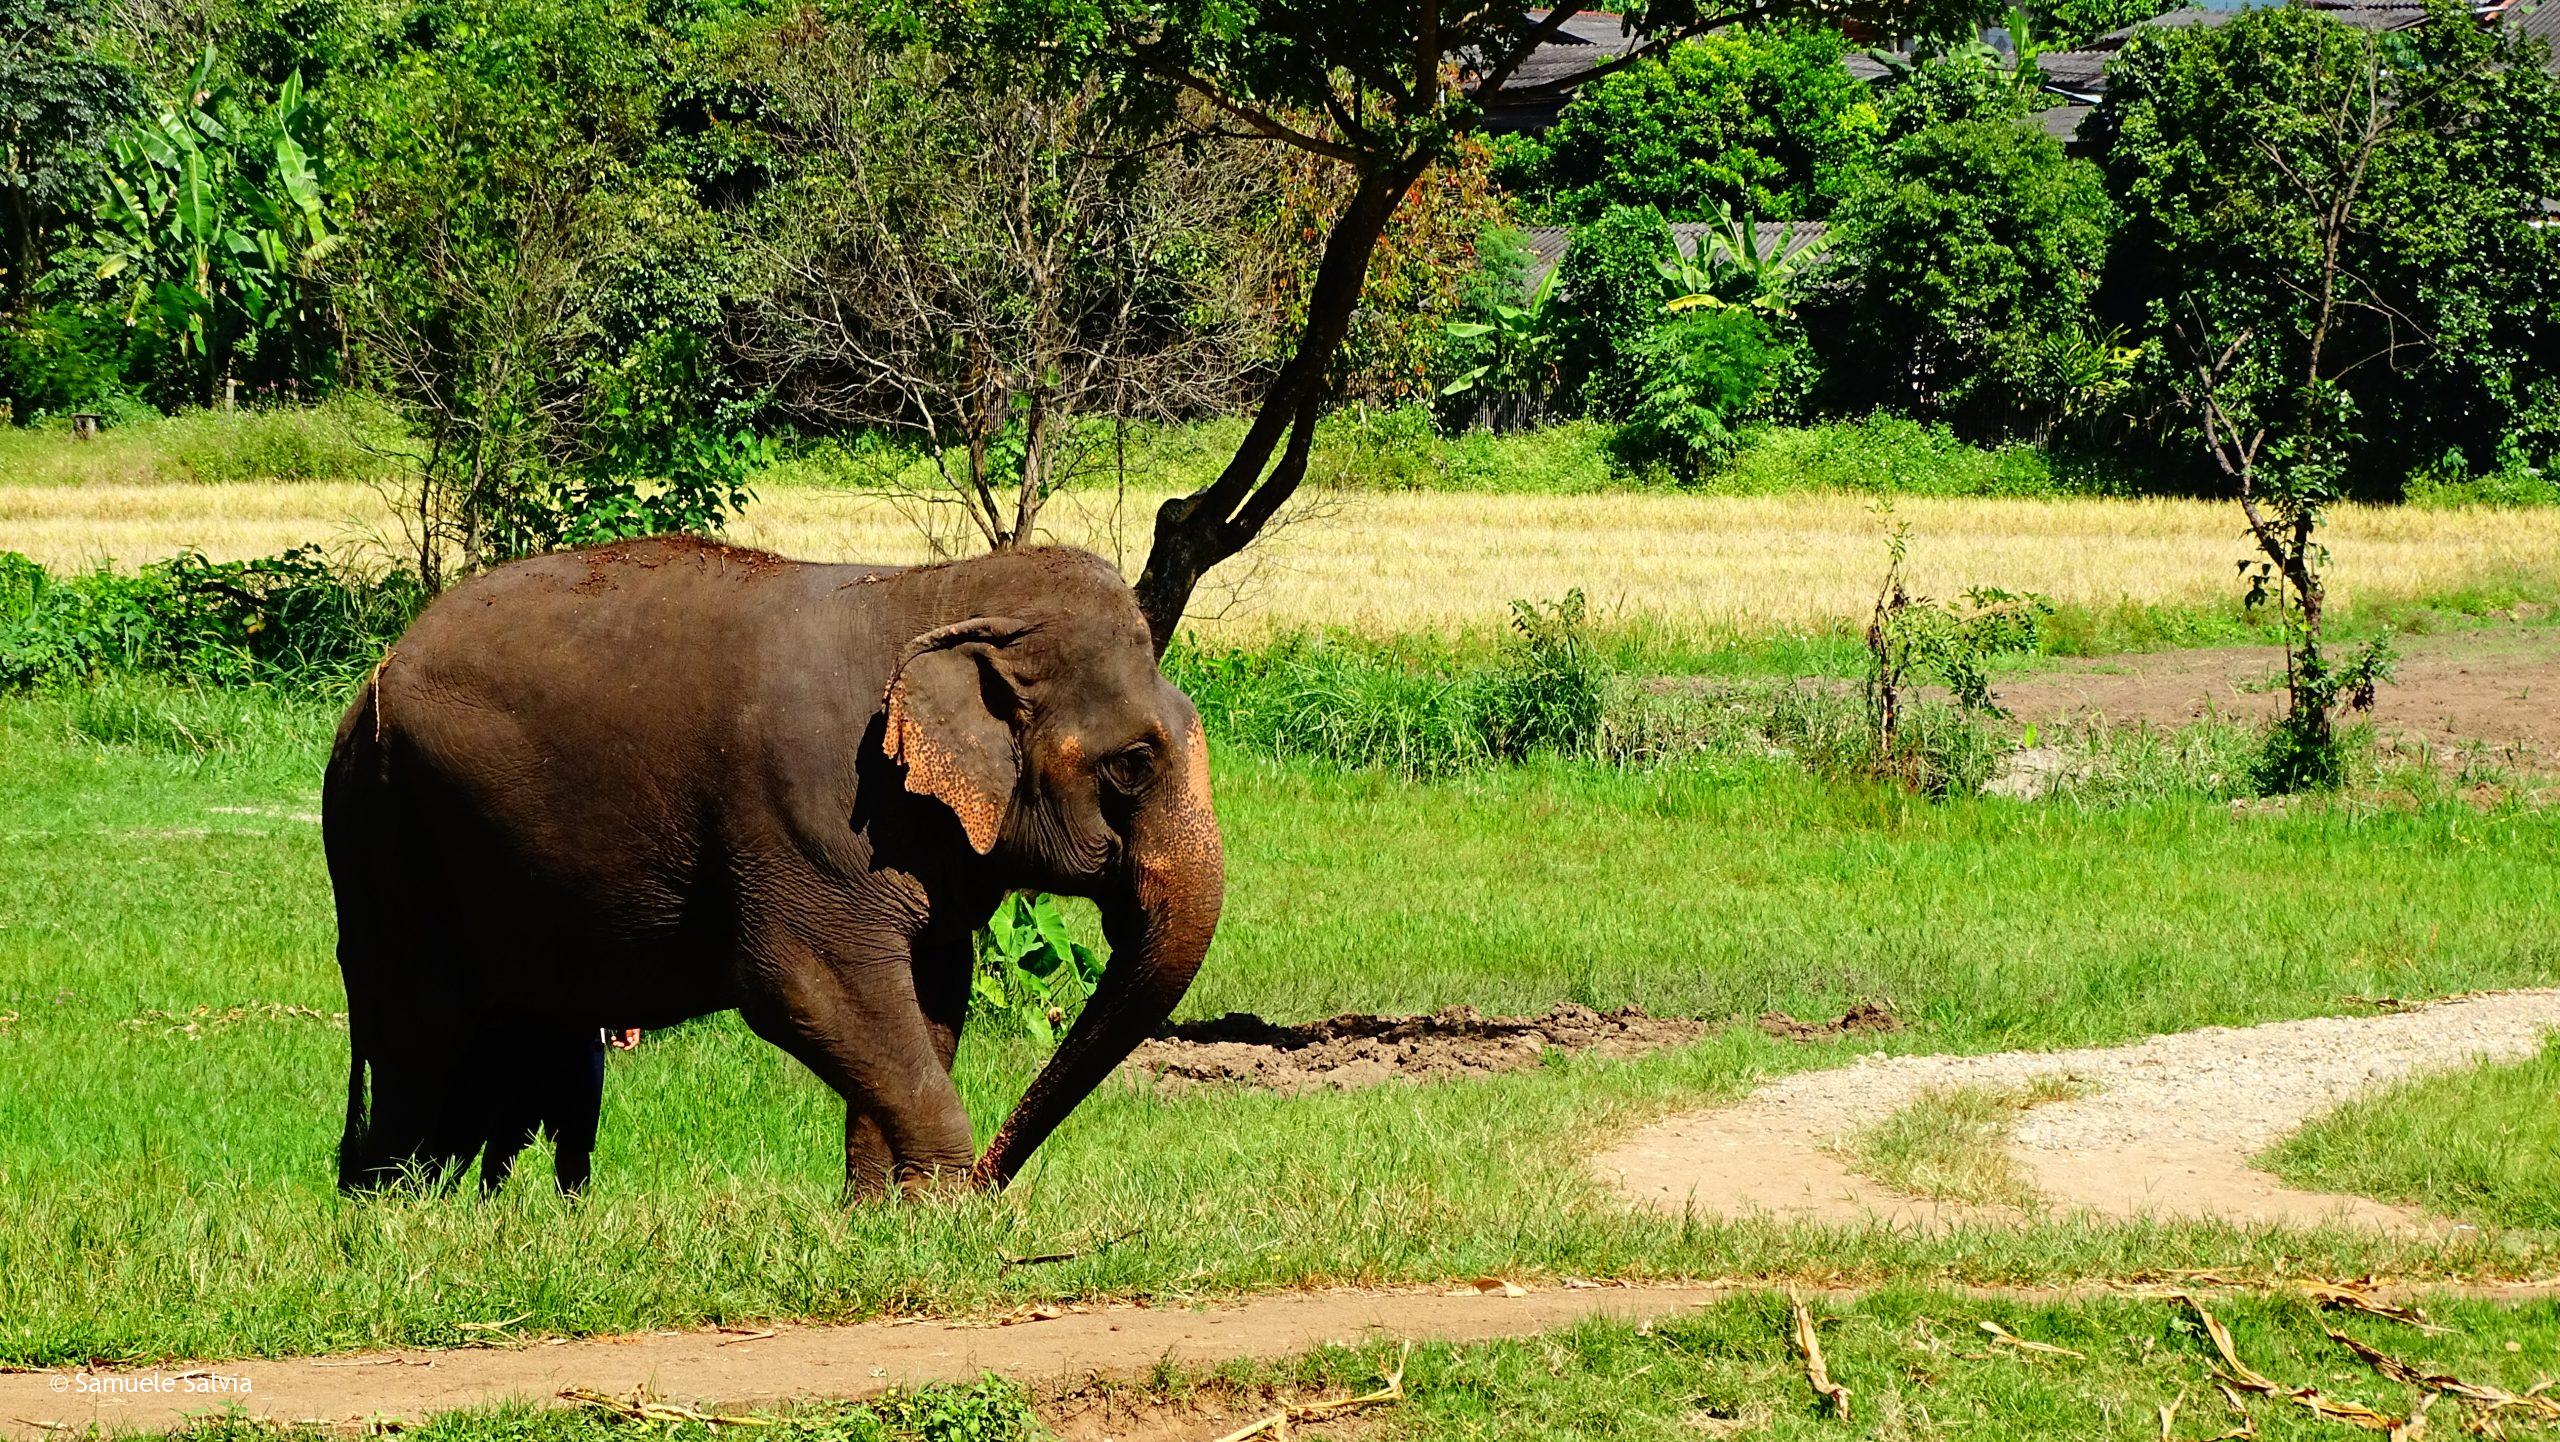 Al santuario degli elefanti di Chiang Mai gli elefanti sono liberi hanno spazi ampissimi in cui muoversi in libertà.